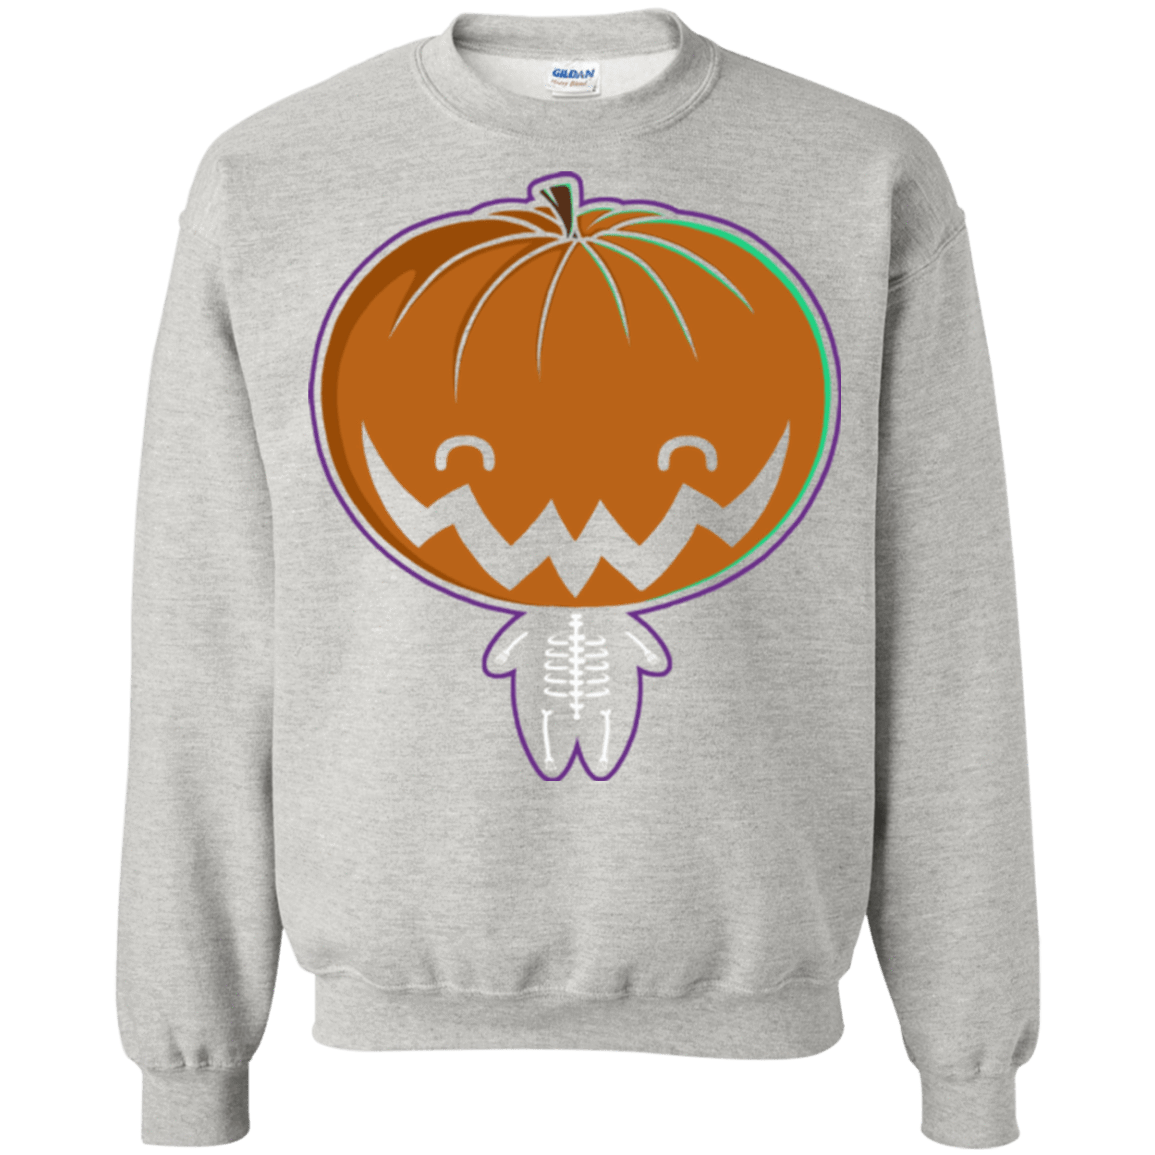 Sweatshirts Ash / Small Pumpkin Head Crewneck Sweatshirt